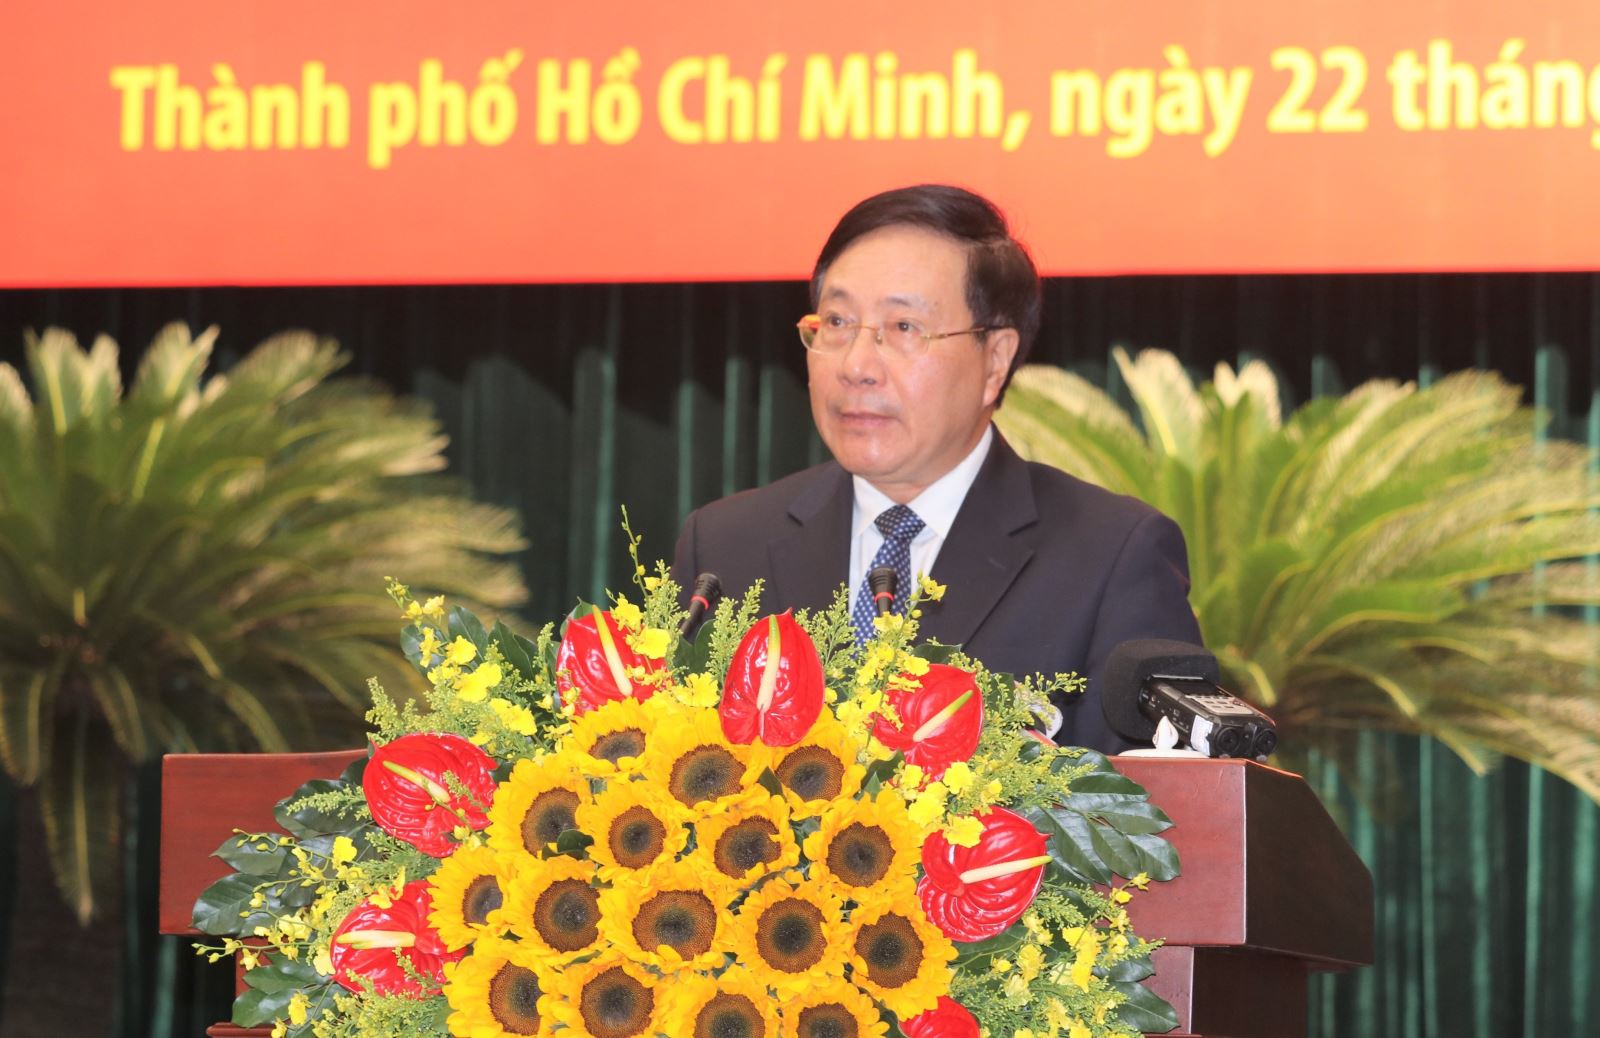 Phó thủ tướng Thường trực Phạm Bình Minh phát biểu khai mạc hội thảo cấp quốc gia tại TP. Hồ Chí Minh trong sáng 22-11-2022.